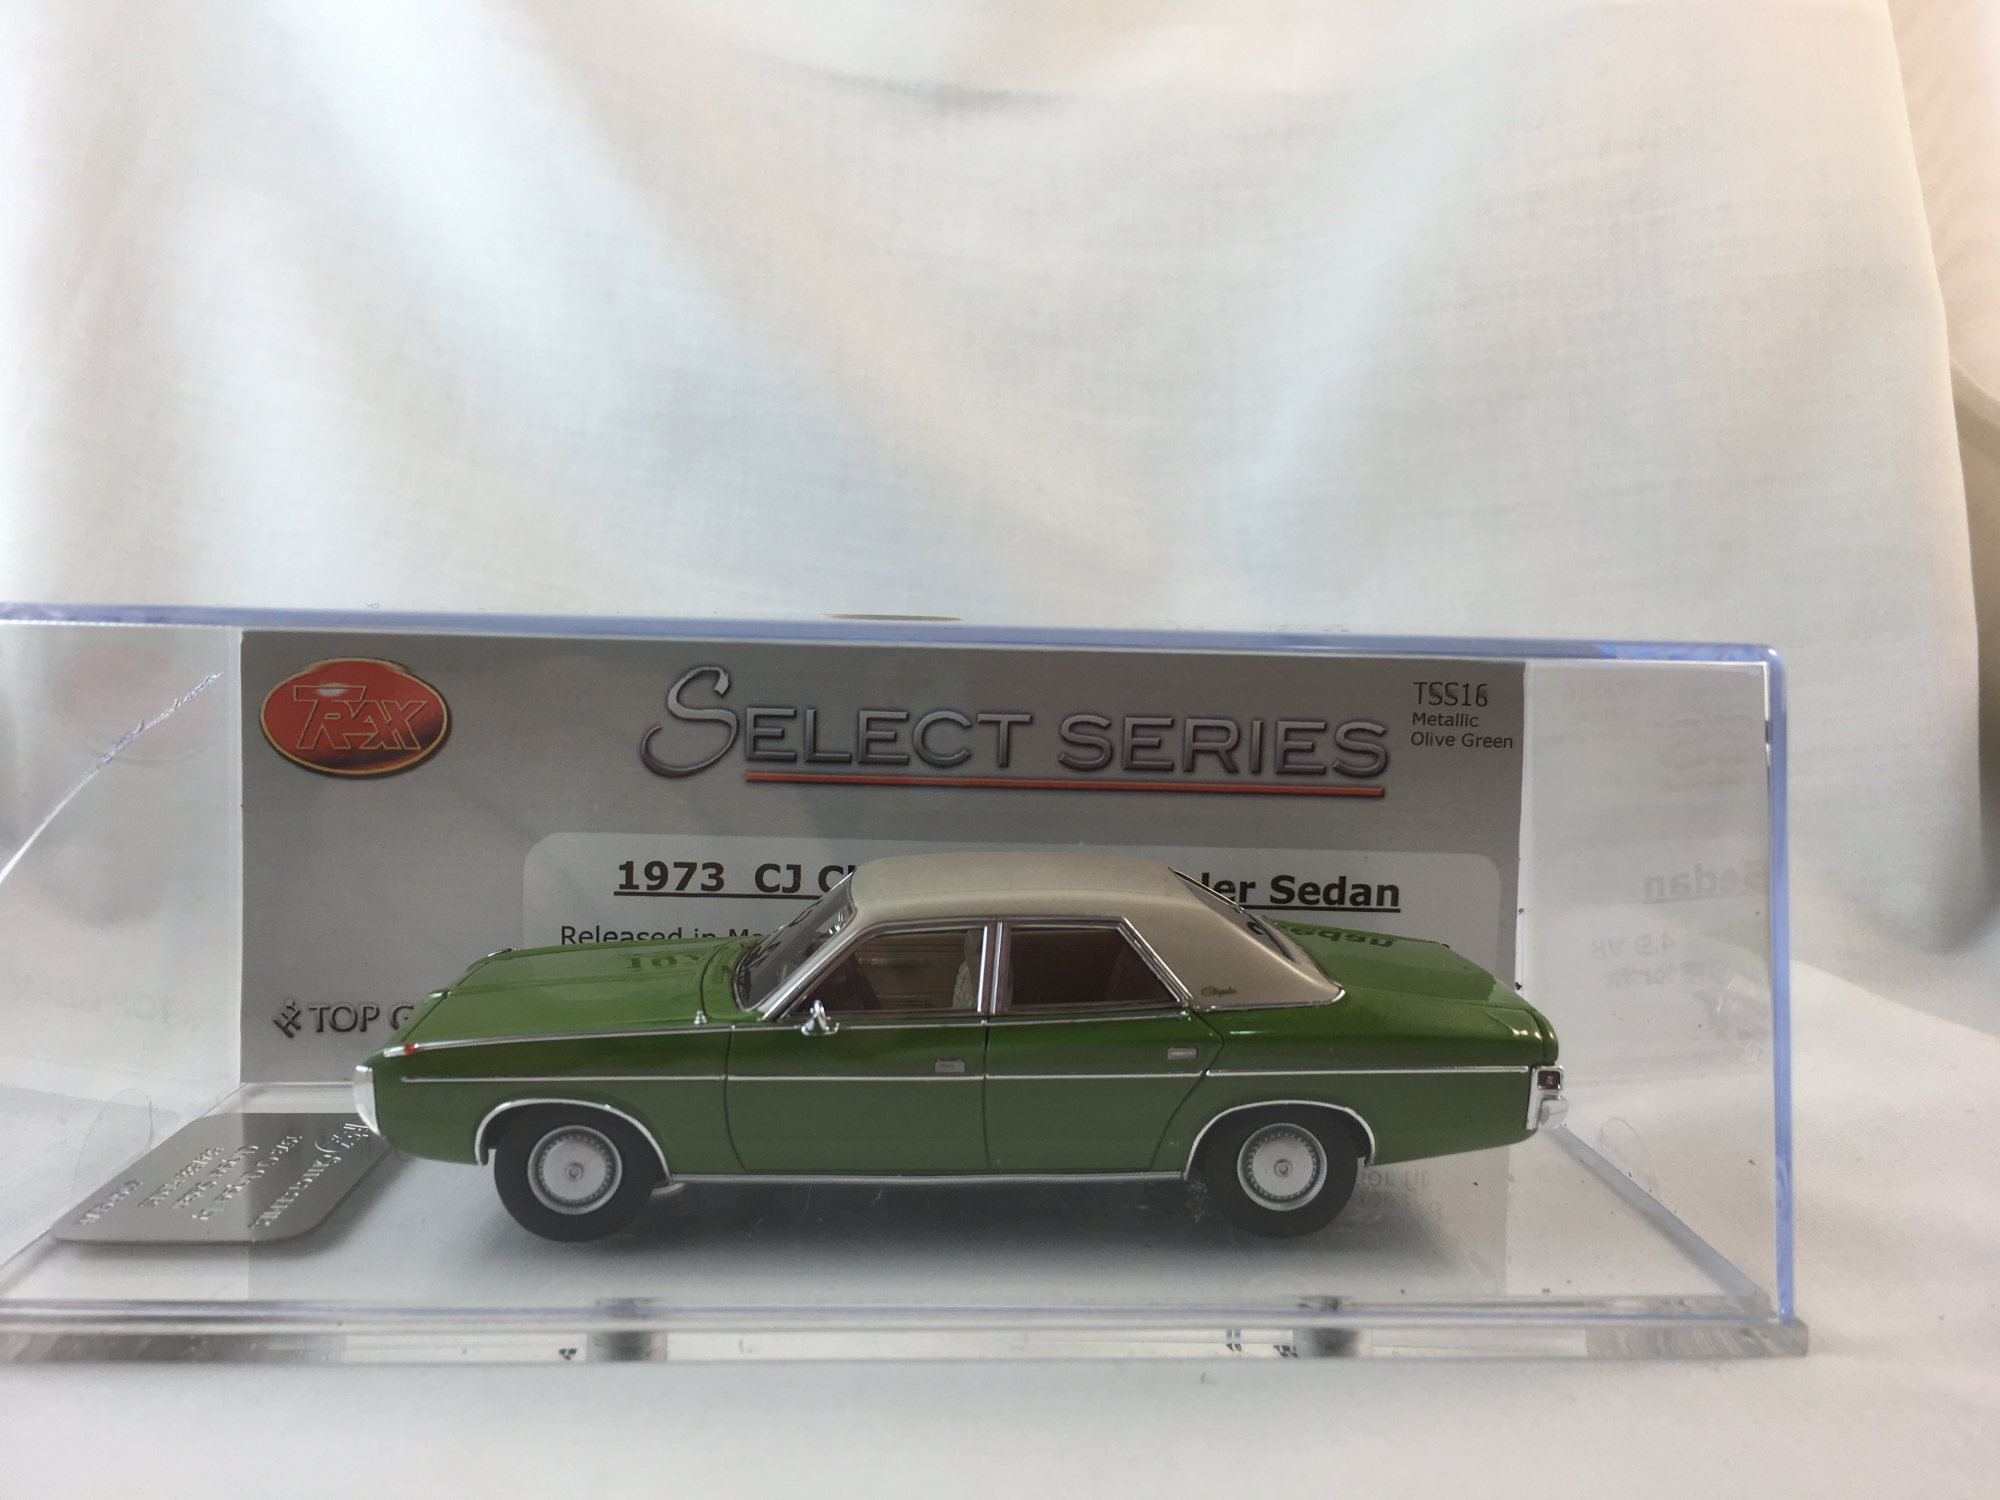 1973 CJ Chrysler By Chrysler Sedan – Metallic Olive Green